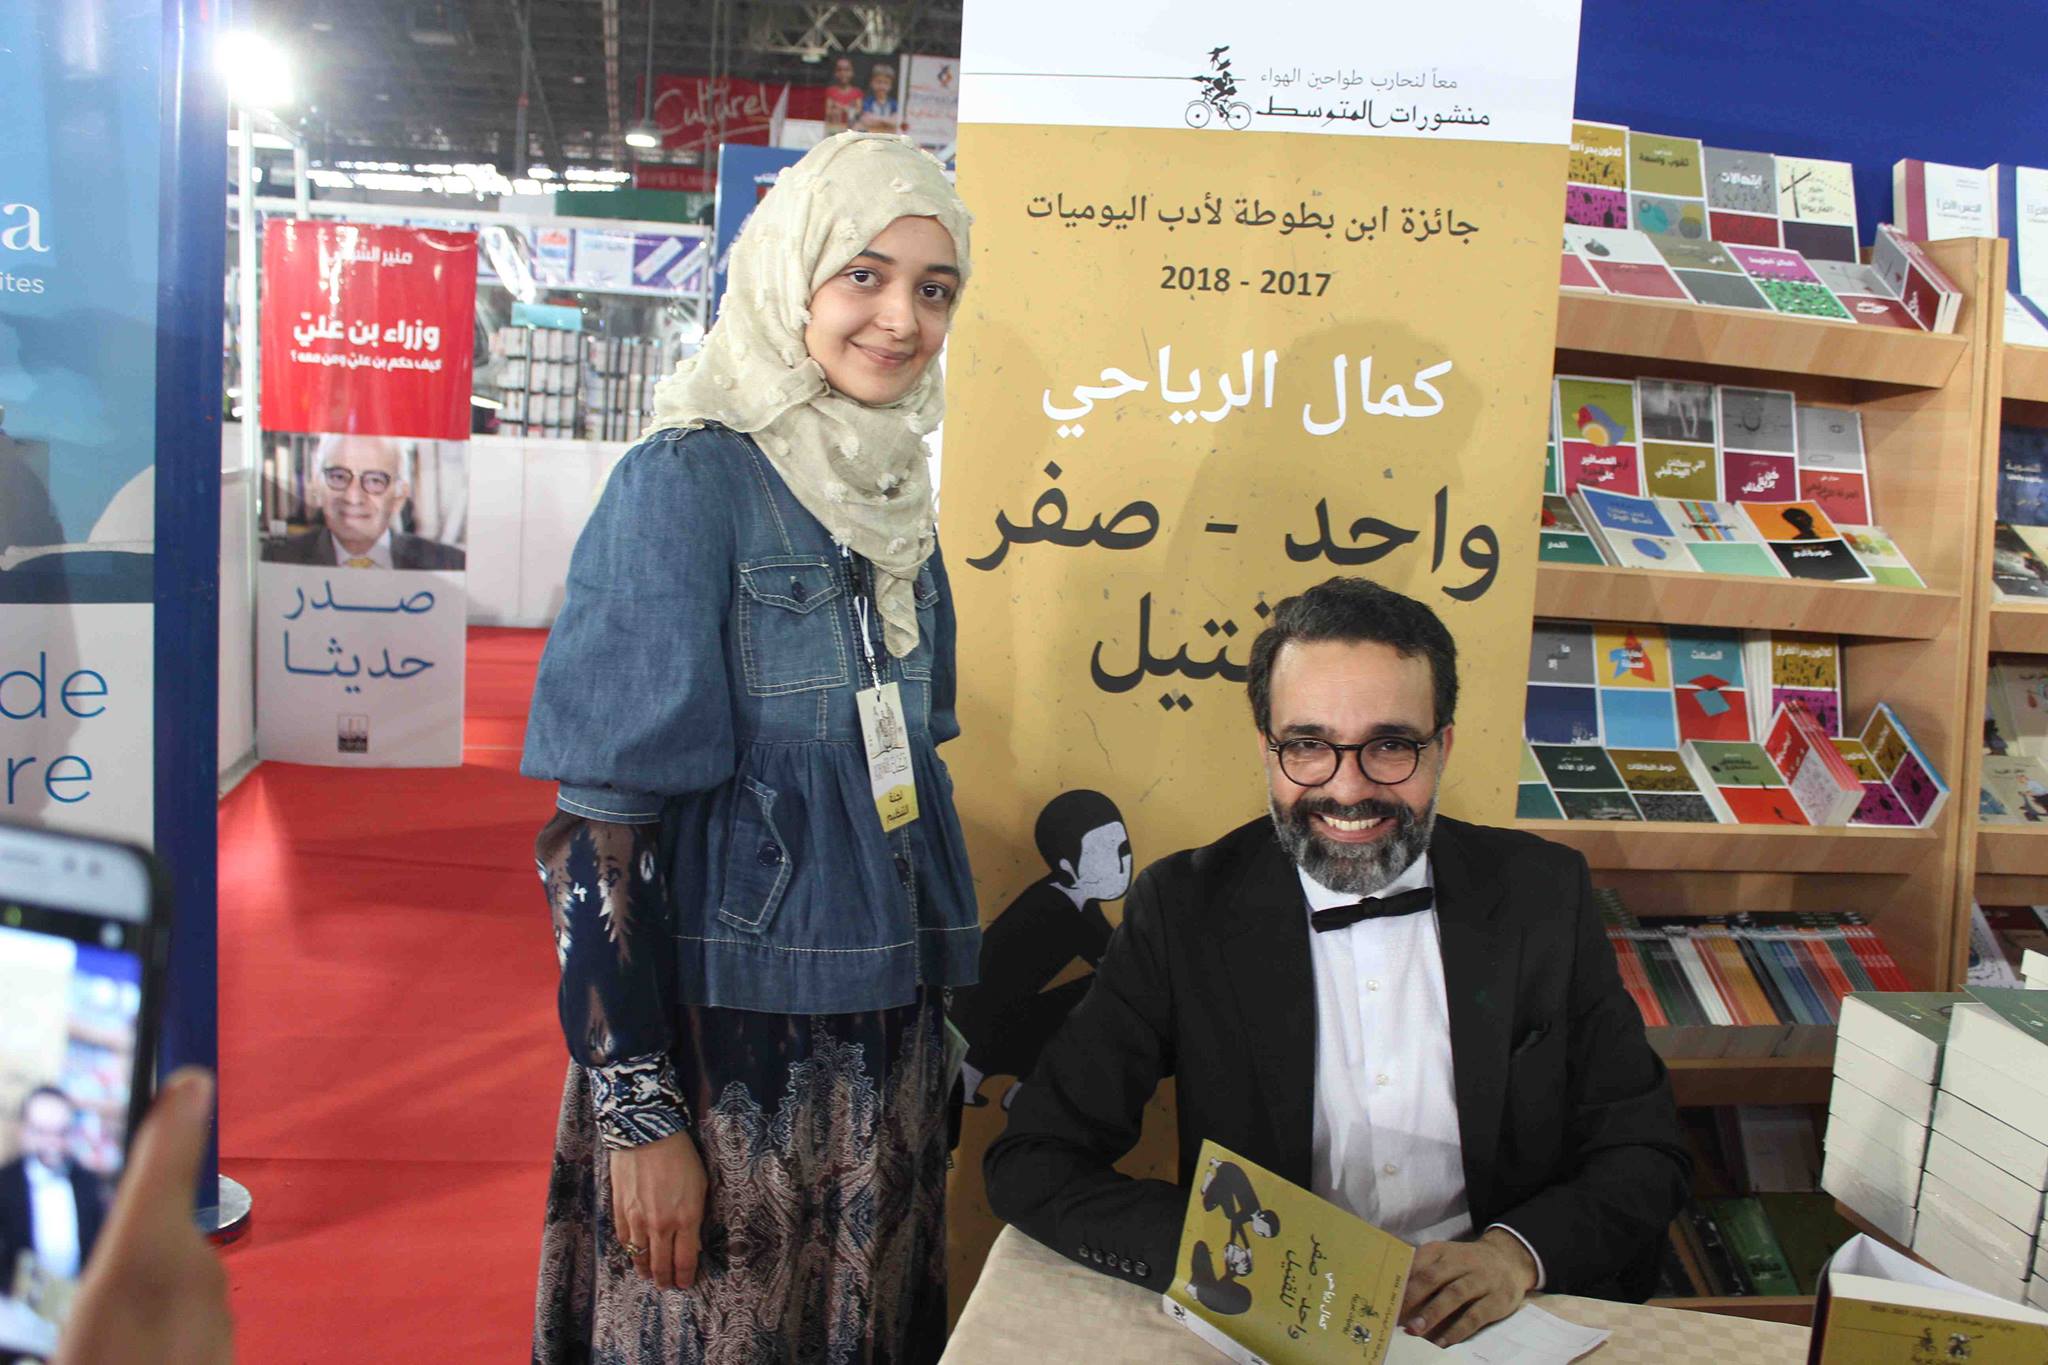 كمال الرياحى يوقع كتابه واحد صفر للقتيل الفائز بجائزة ابن بطوطة فى معرض تونس (25)